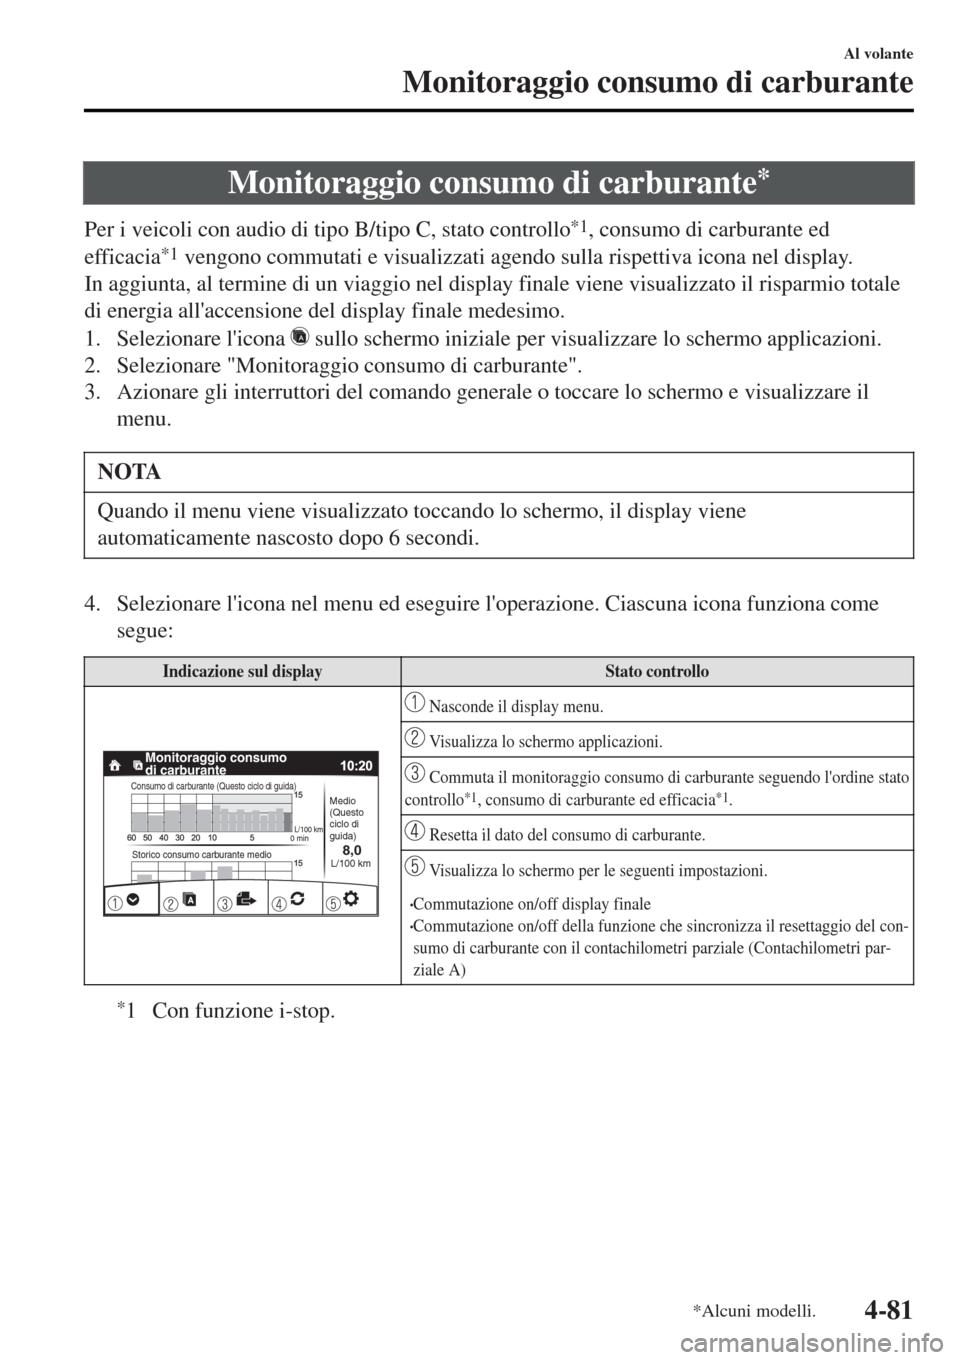 MAZDA MODEL MX-5 2015  Manuale del proprietario (in Italian) Monitoraggio consumo di carburante*
Per i veicoli con audio di tipo B/tipo C, stato controllo*1, consumo di carburante ed
efficacia
*1 vengono commutati e visualizzati agendo sulla rispettiva icona ne